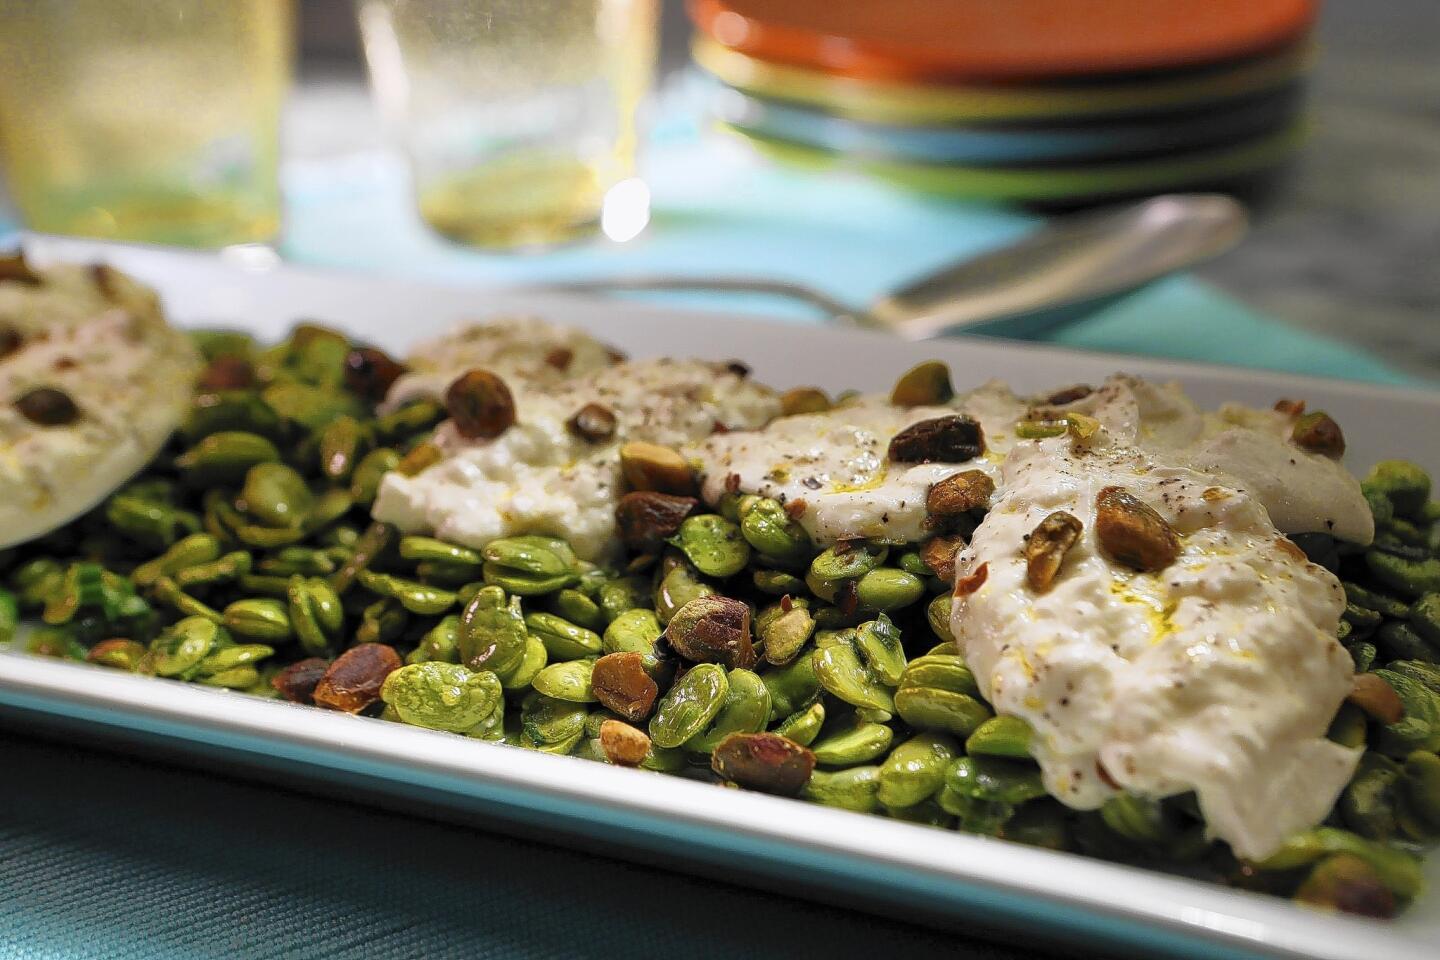 Recipe: Fava bean salad with mint, burrata and pistachios